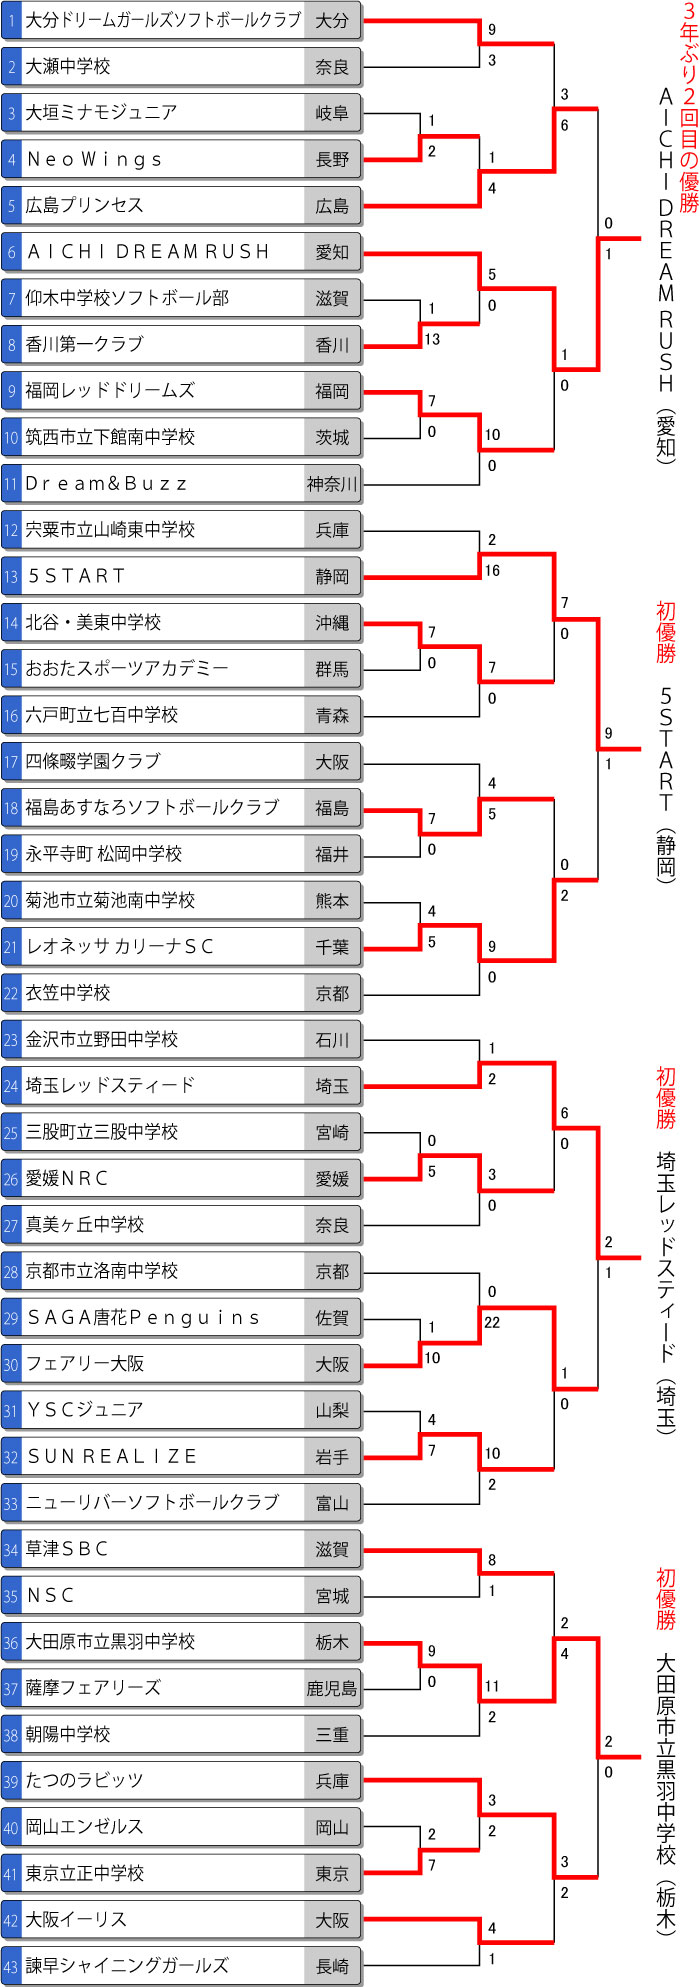 第21回全日本中学生女子大会トーナメント表